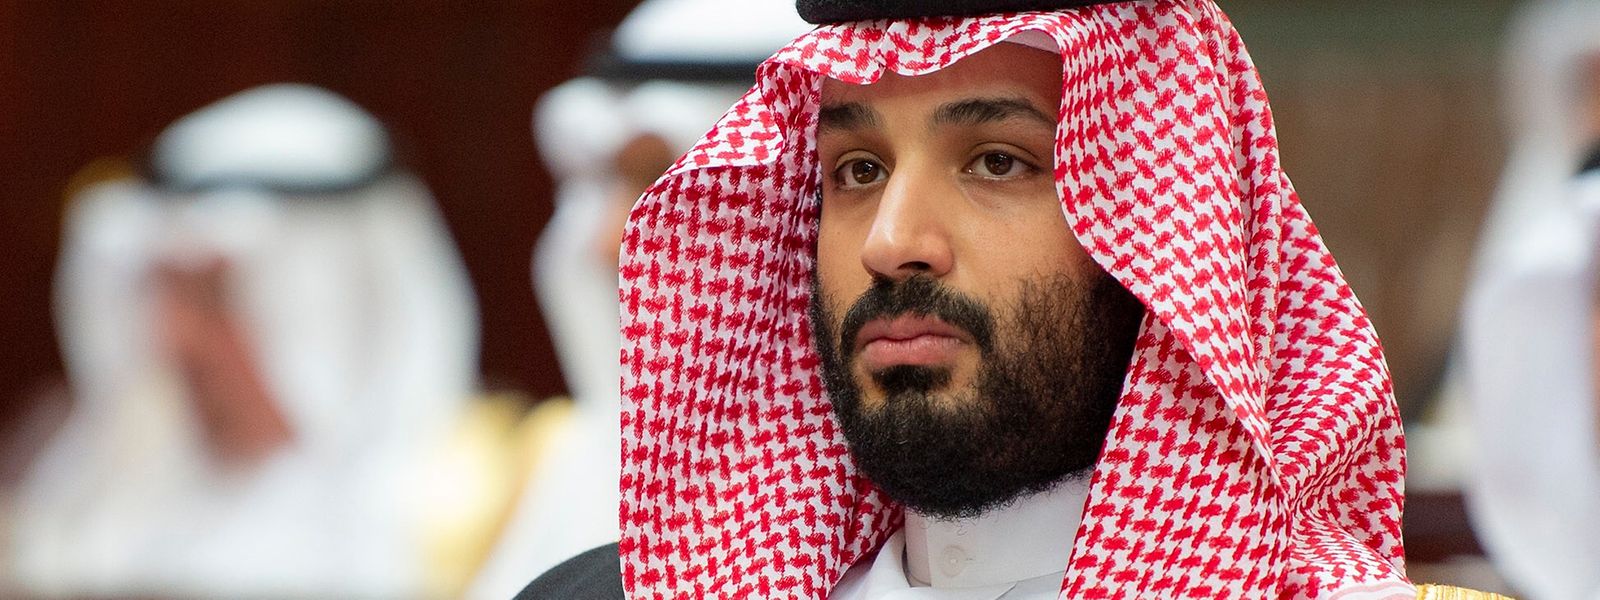 Die CIA soll Belege für eine Verwicklung des saudischen Kronprinzen Mohammed bin Salman in den Khashoggi-Mord haben.